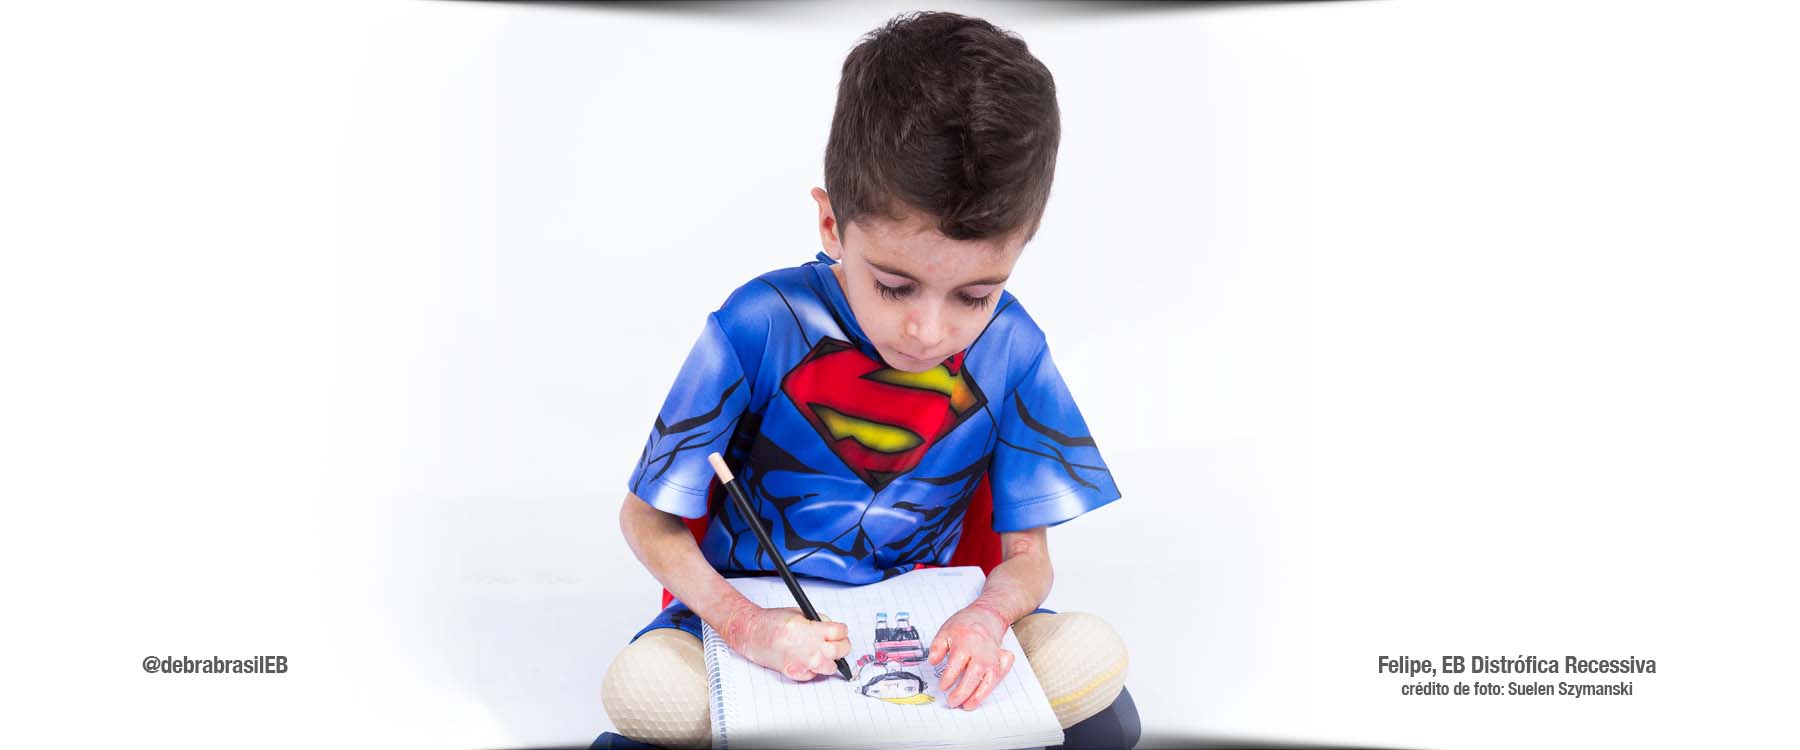 Felipe, menino com epidermólise bolhosa (EB) distrófica recessiva, está sentado de pernas cruzadas e desenhando